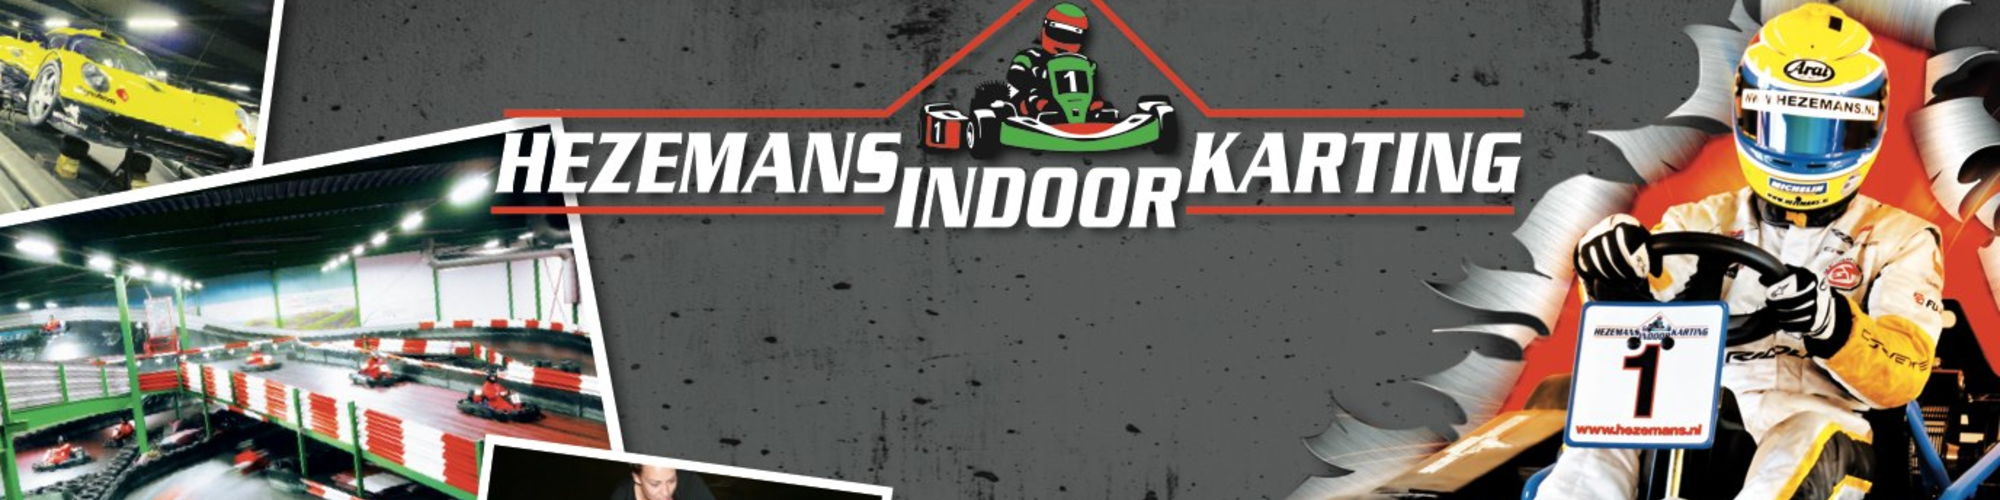 Hezemans Indoor Karting cover image